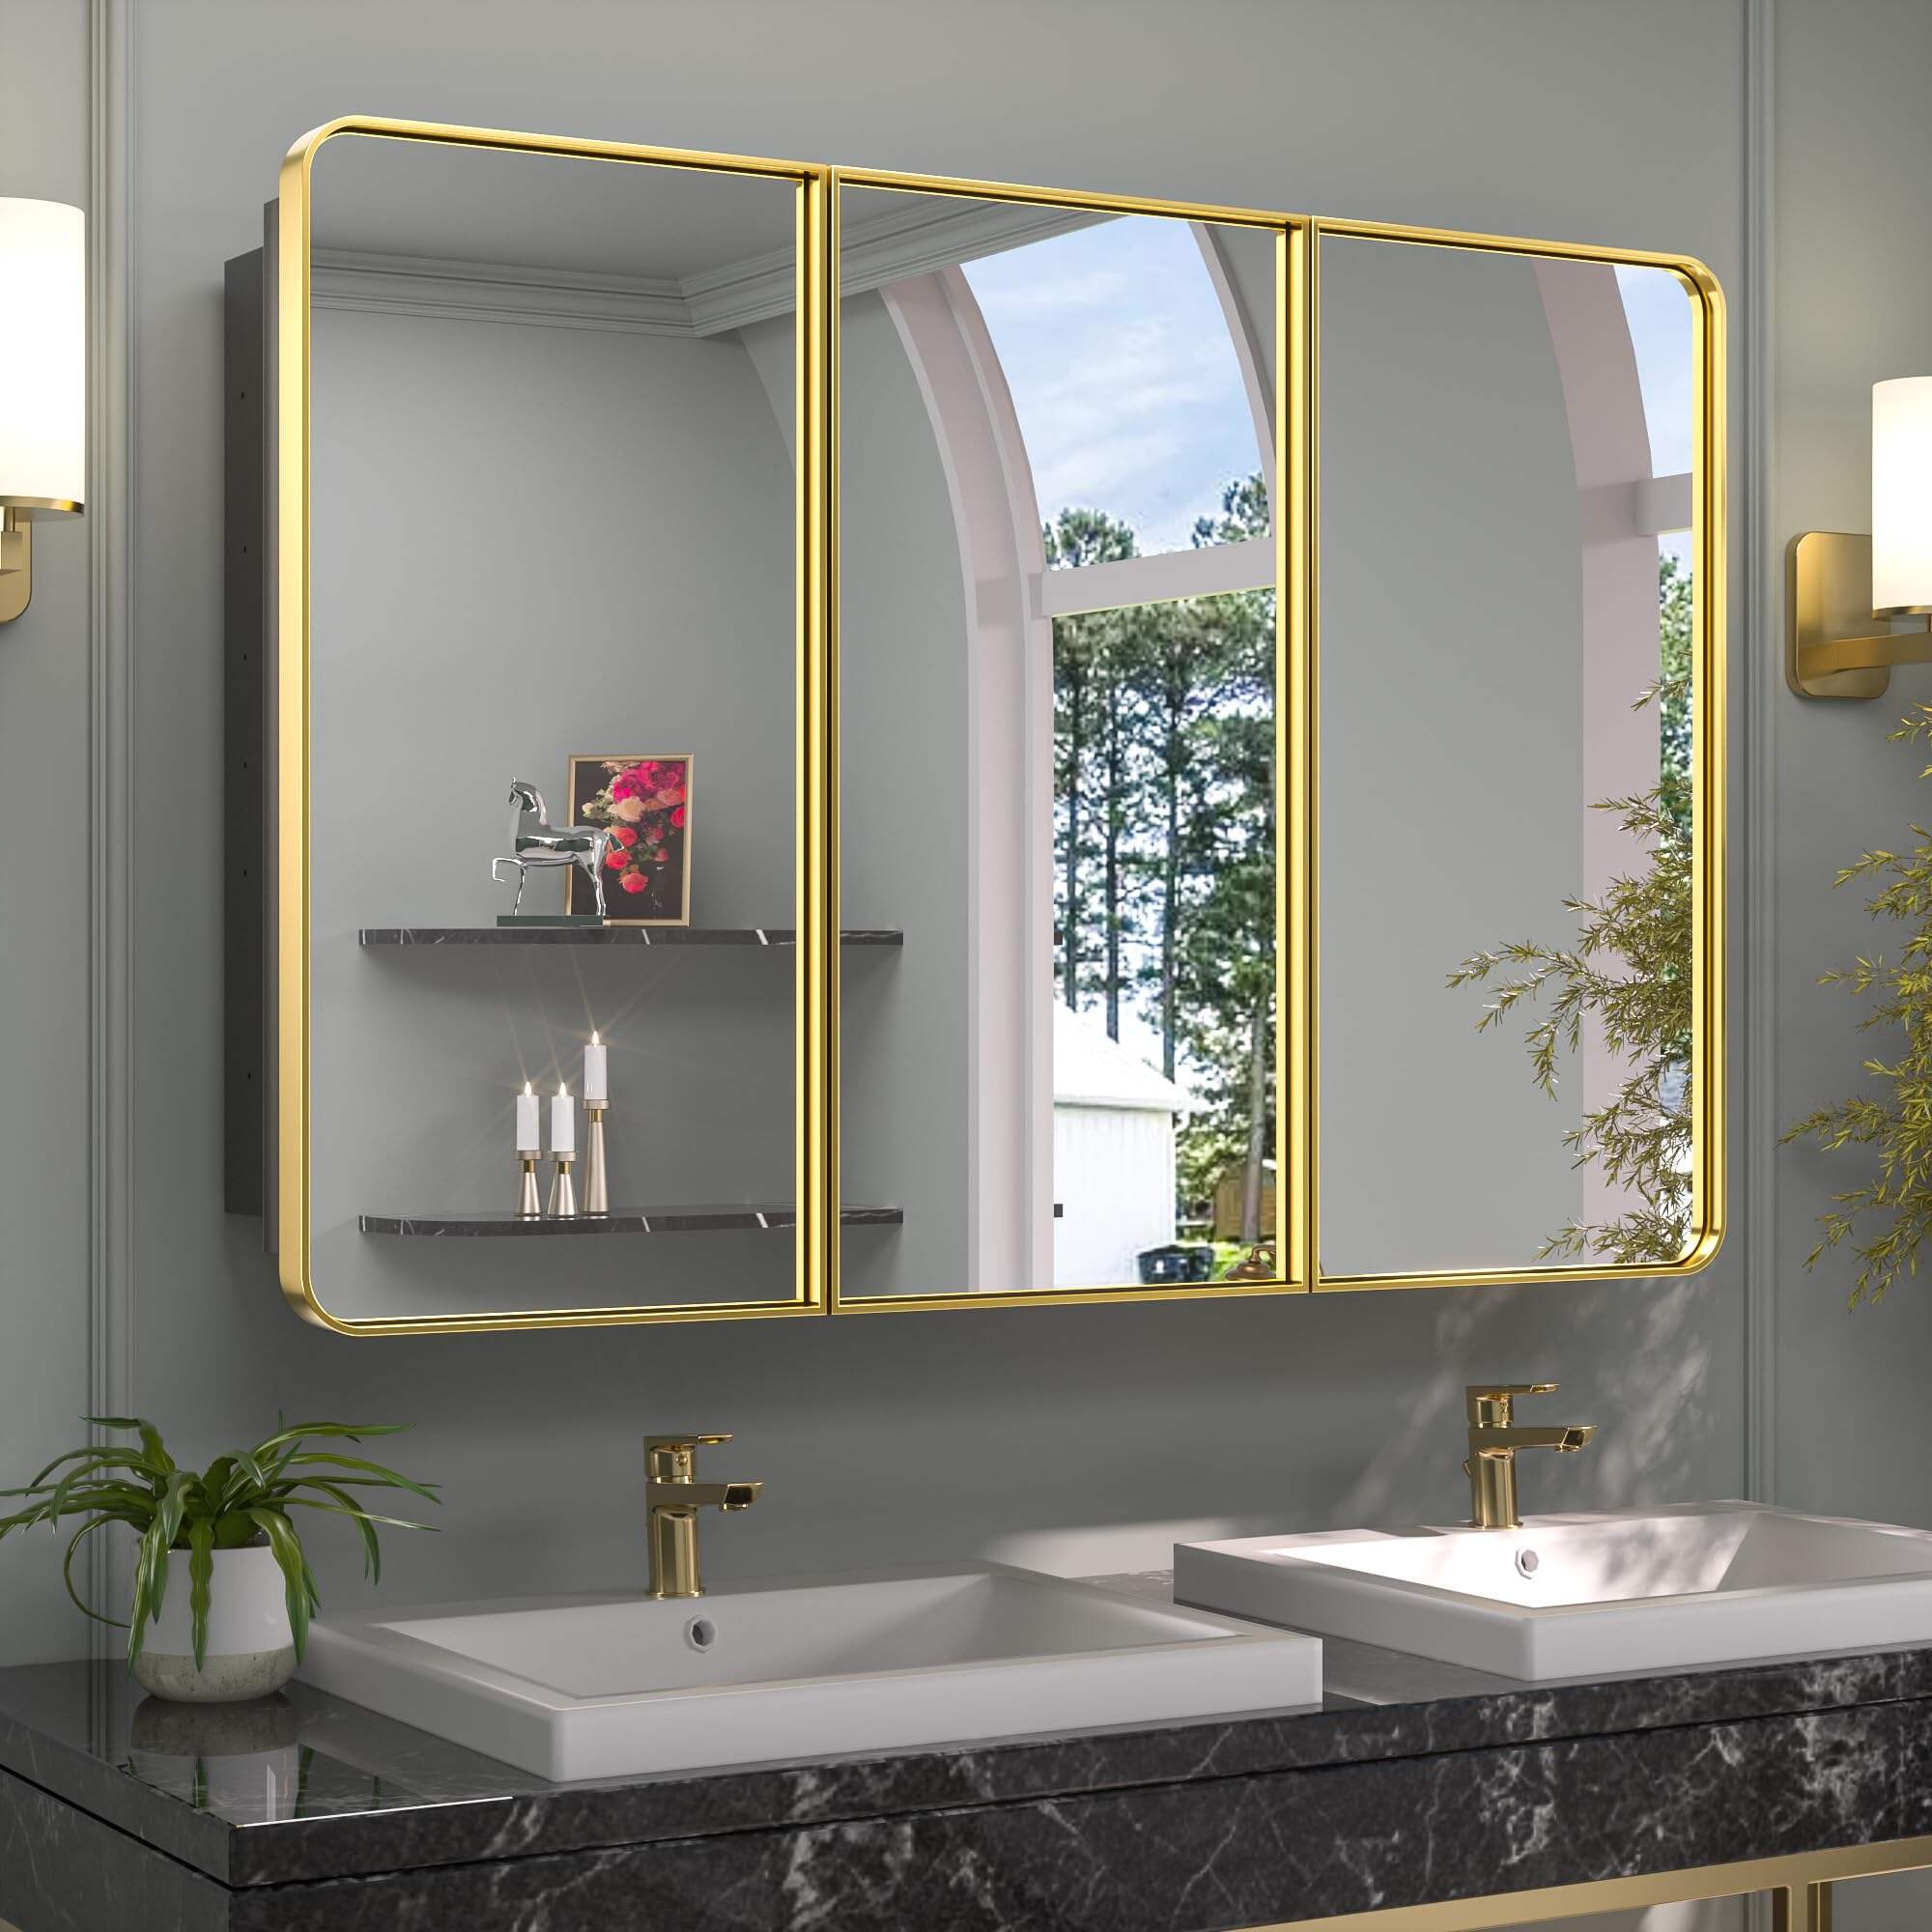 Foshan Haohan Smart Home Co., Ltd. خزانات طبية ذهبية مقاس 48 × 32 بوصة للحمام مع مرآة، أرفف قابلة للتعديل، 3 أبواب إطار من الفولاذ المقاوم للصدأ، مفصلة إغلاق ناعمة، وحدة تخزين معدنية ذات مرآة كبيرة مثبتة على الحائط